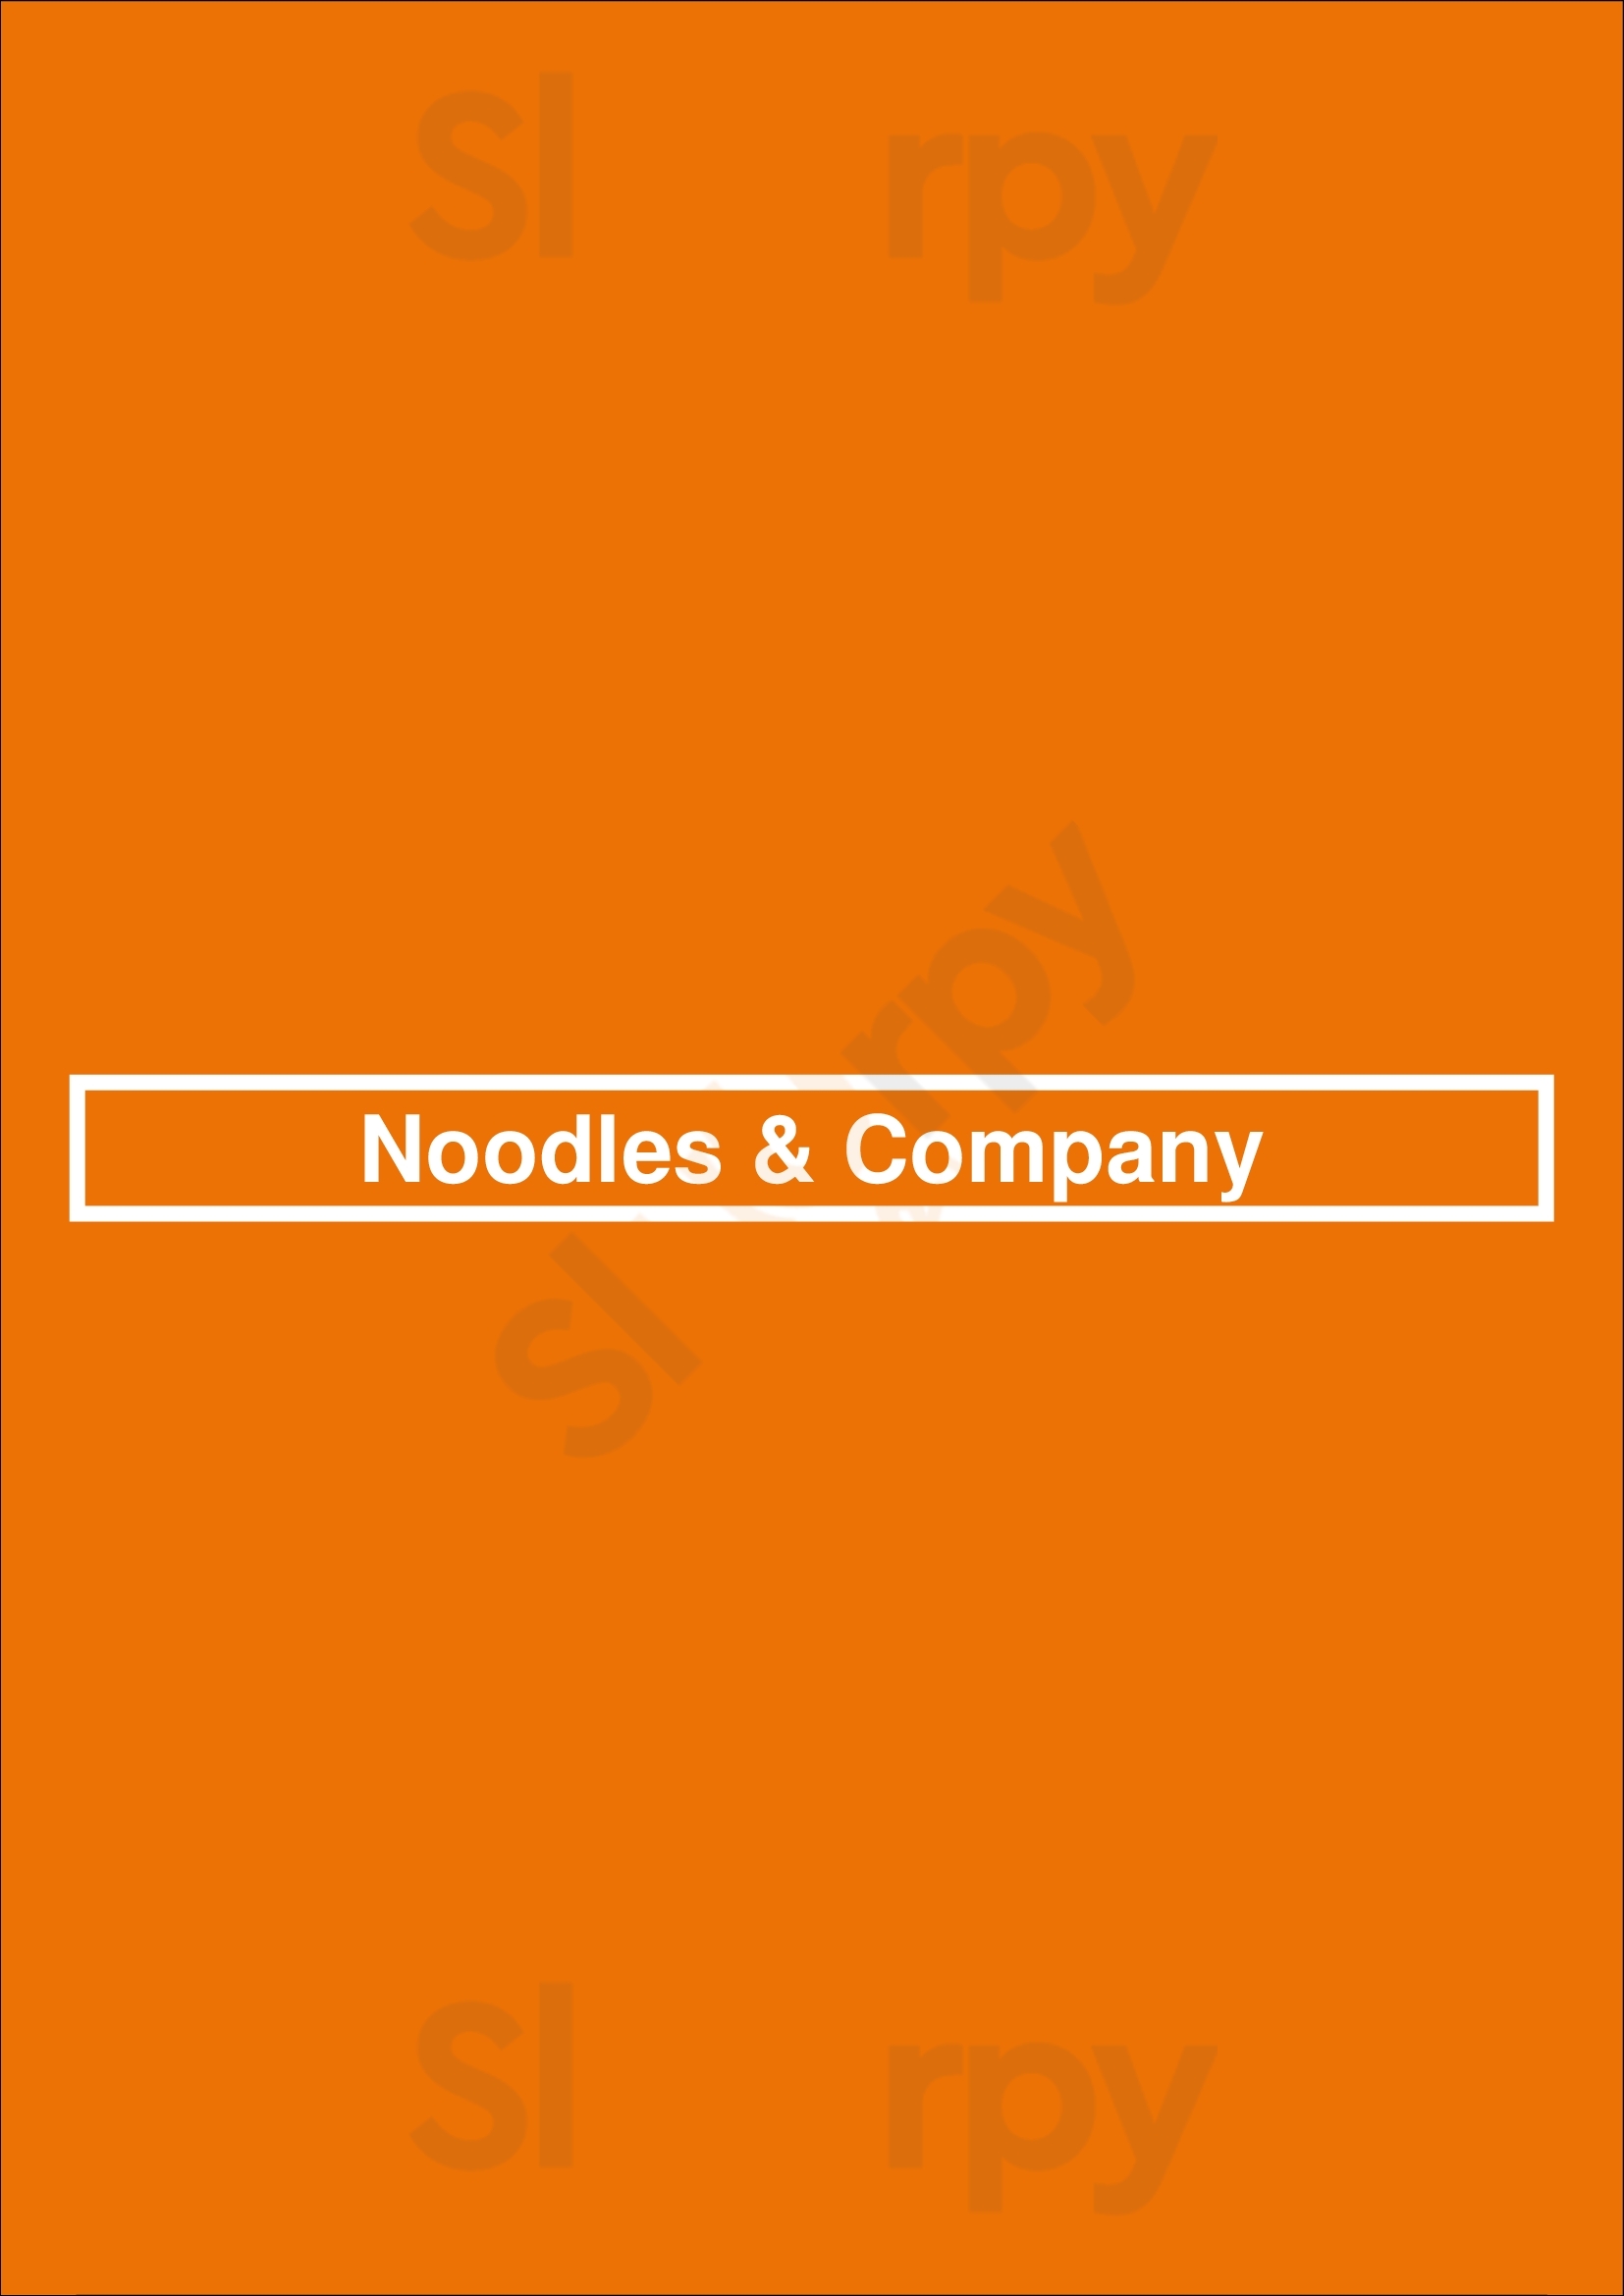 Noodles & Company Lakewood Menu - 1